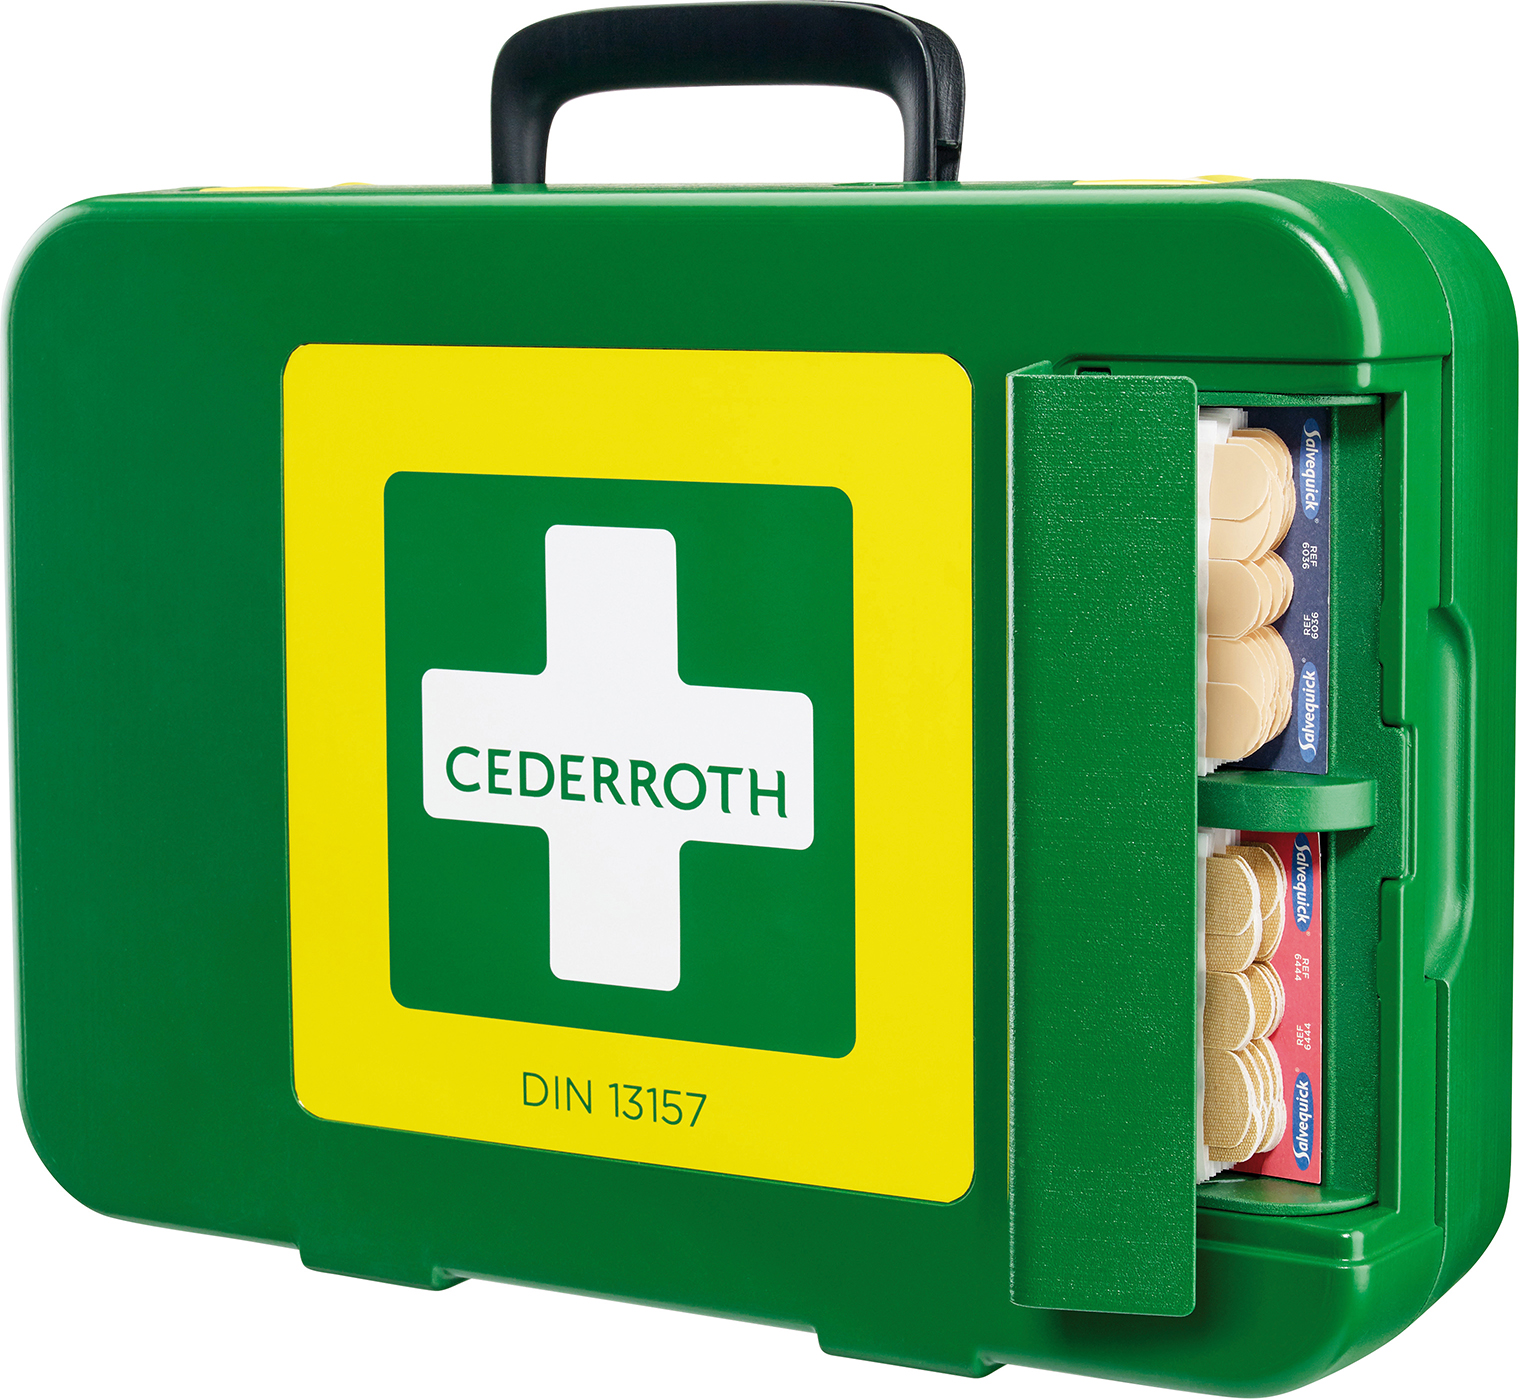 CEDERROTH Erste-Hilfe-Koffer DIN 13157